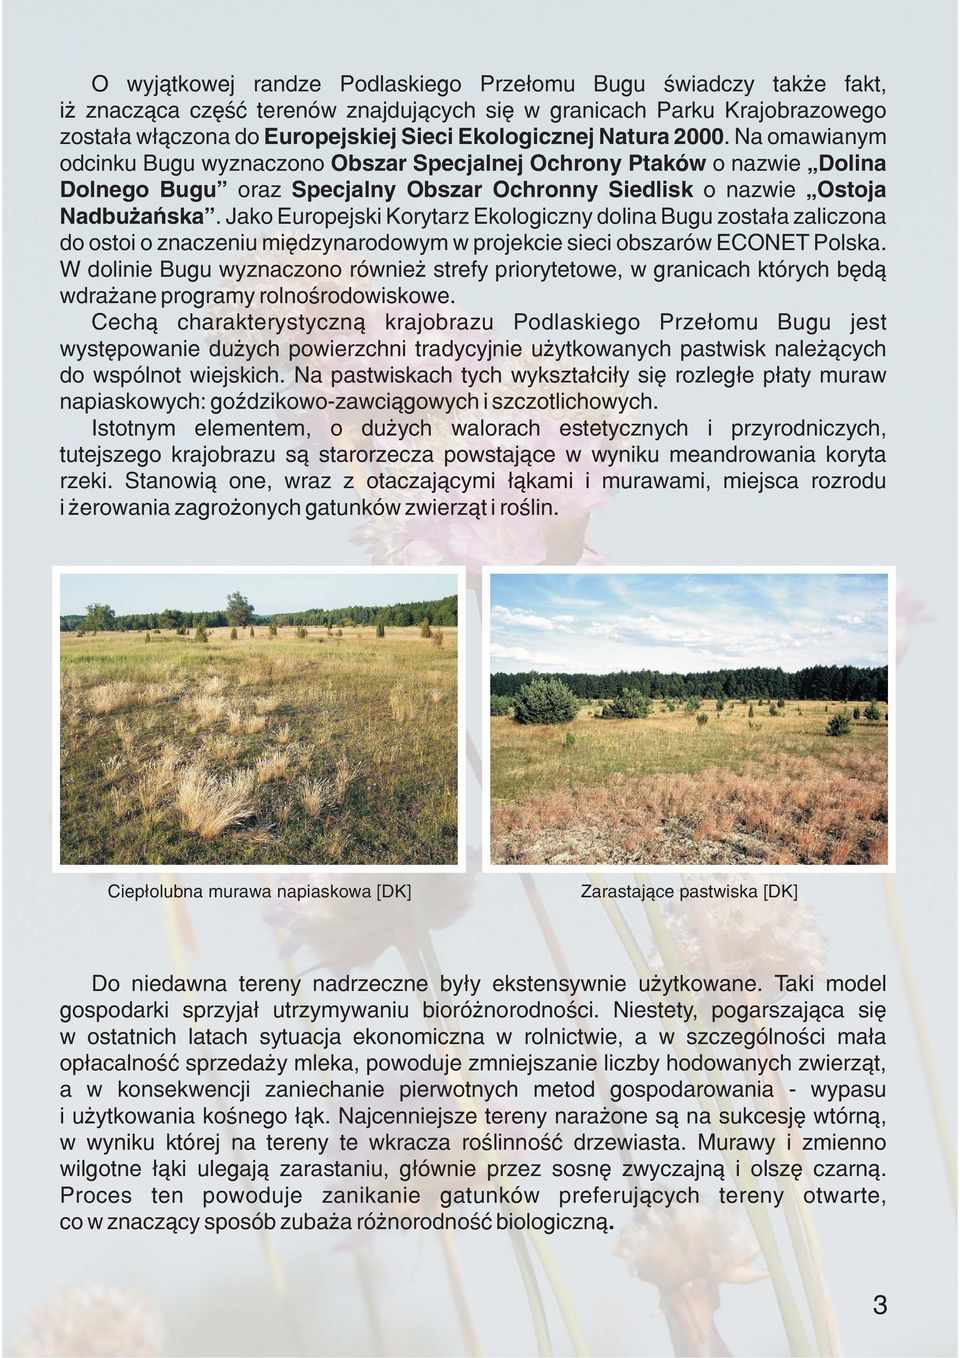 Jako Europejski Korytarz Ekologiczny dolina Bugu zosta³a zaliczona do ostoi o znaczeniu miêdzynarodowym w projekcie sieci obszarów ECONET Polska.